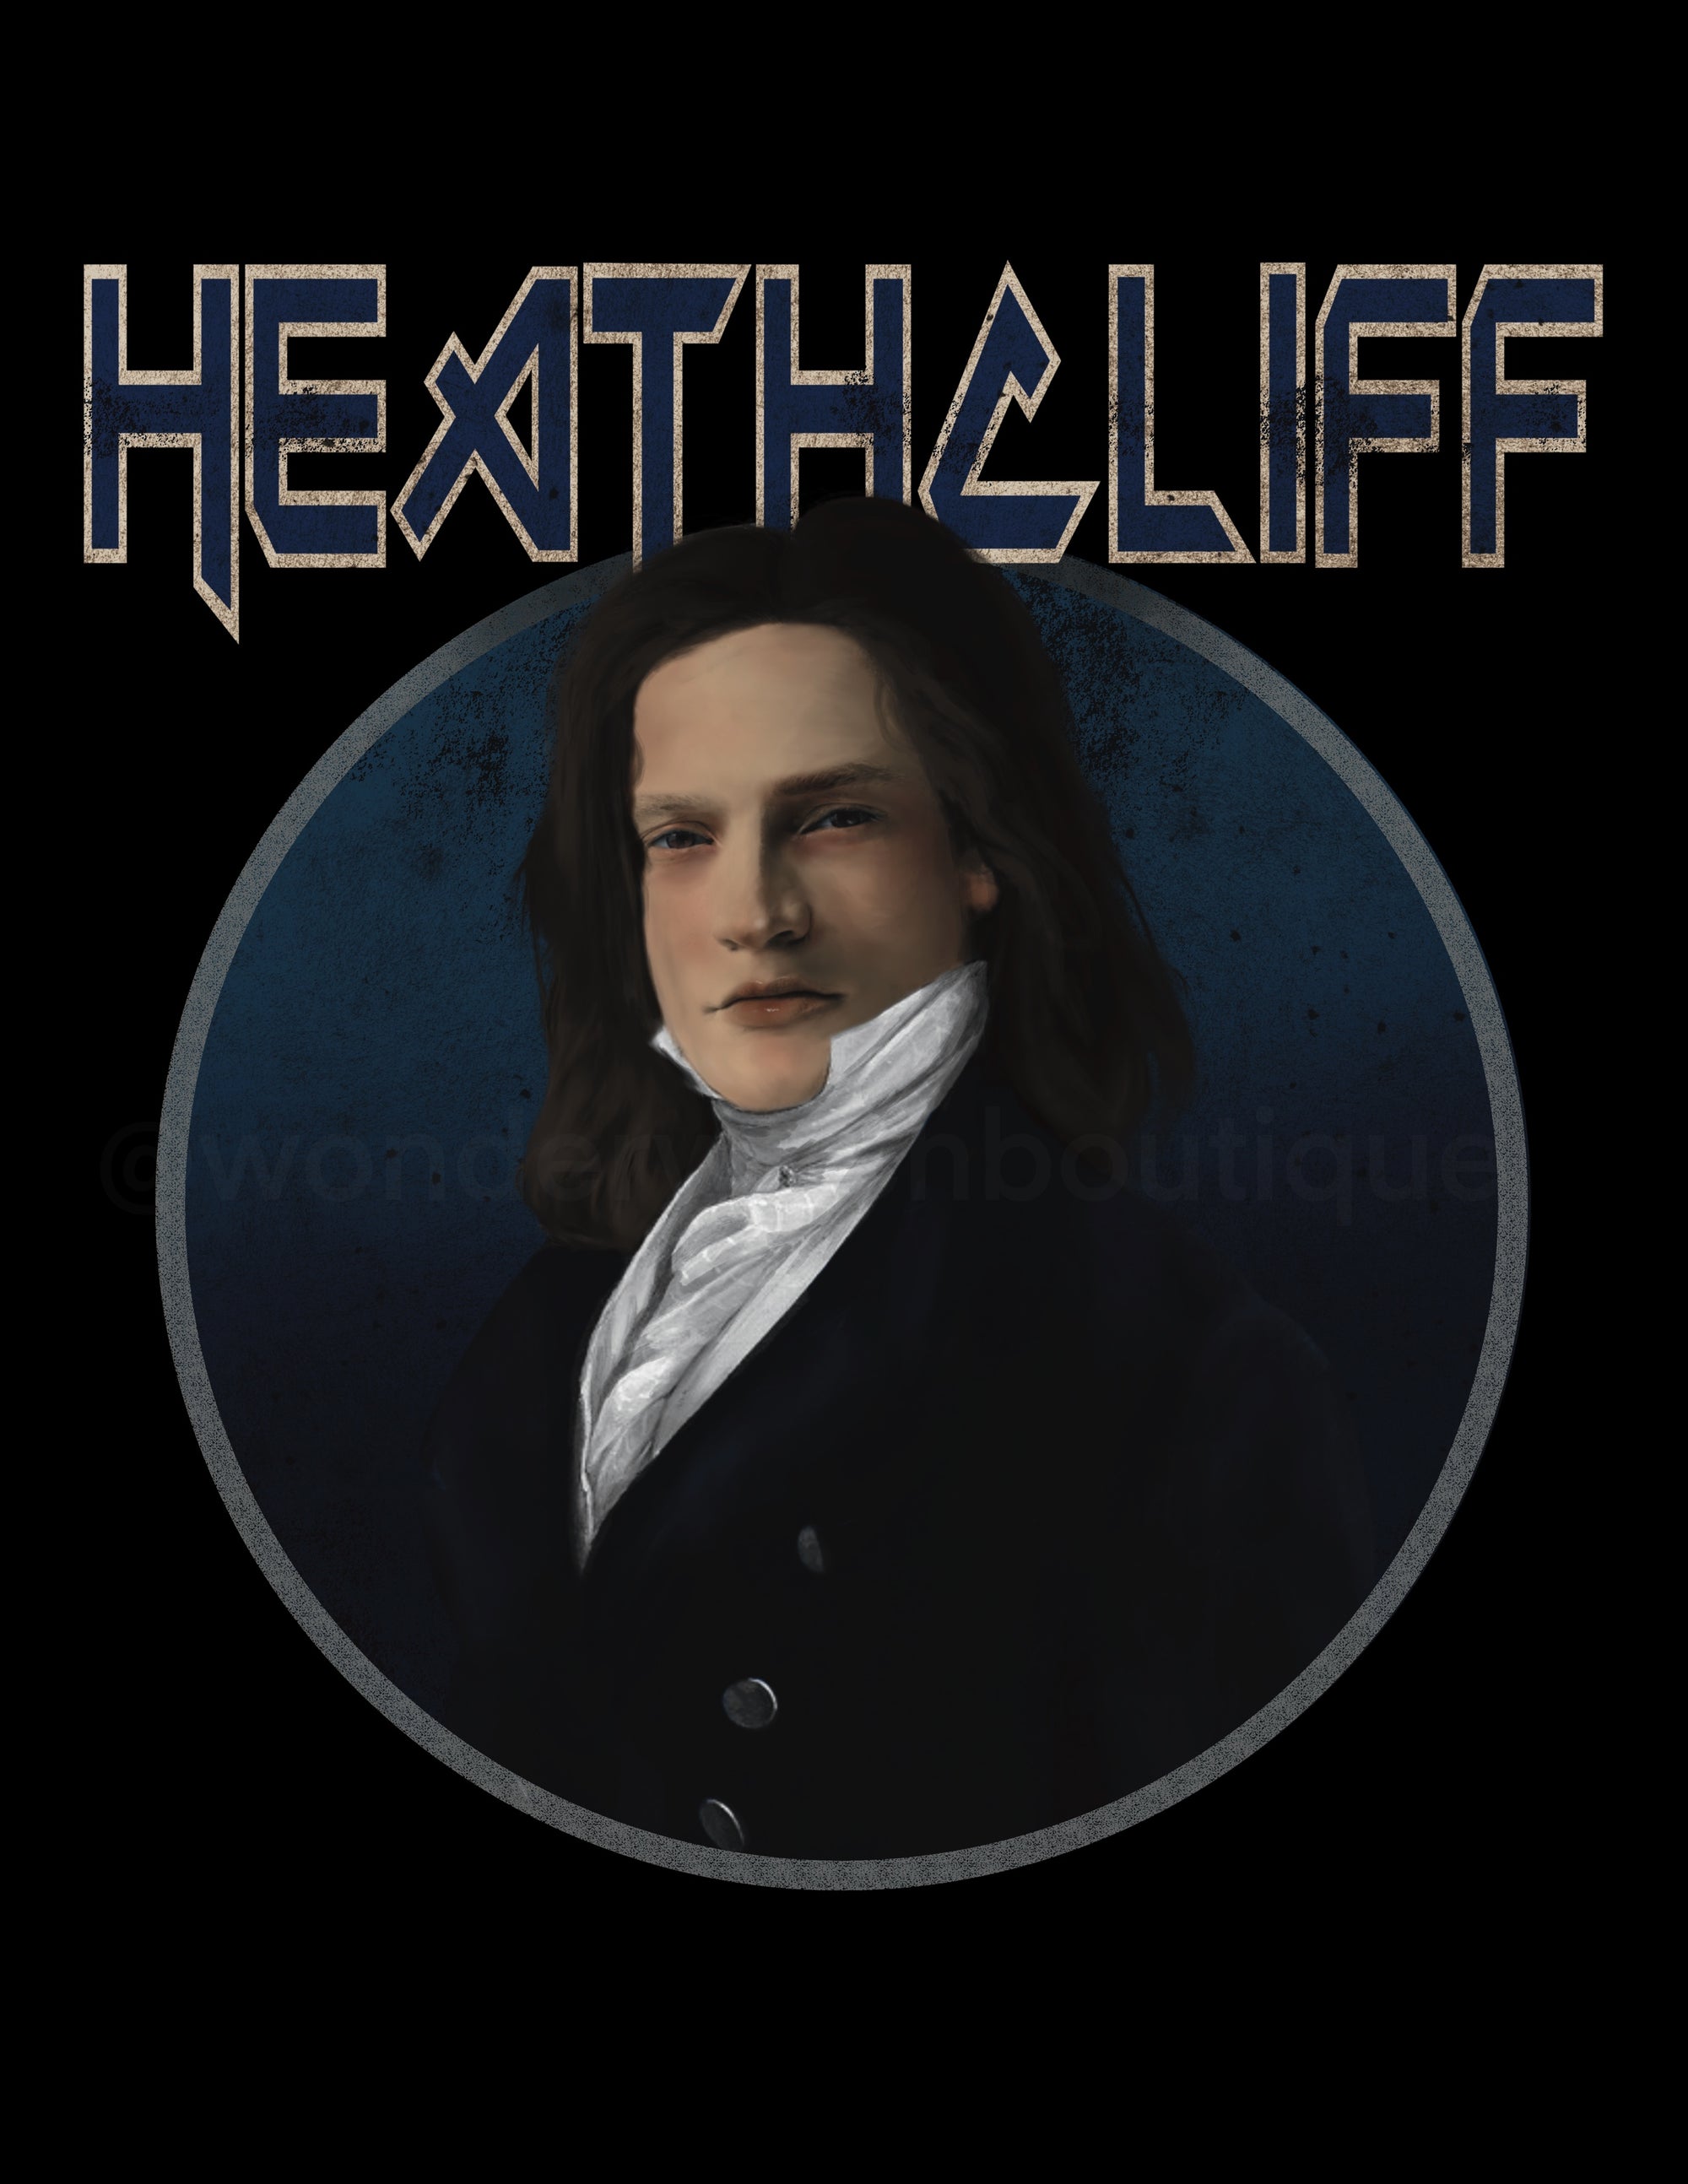 Heathcliff Band Tee